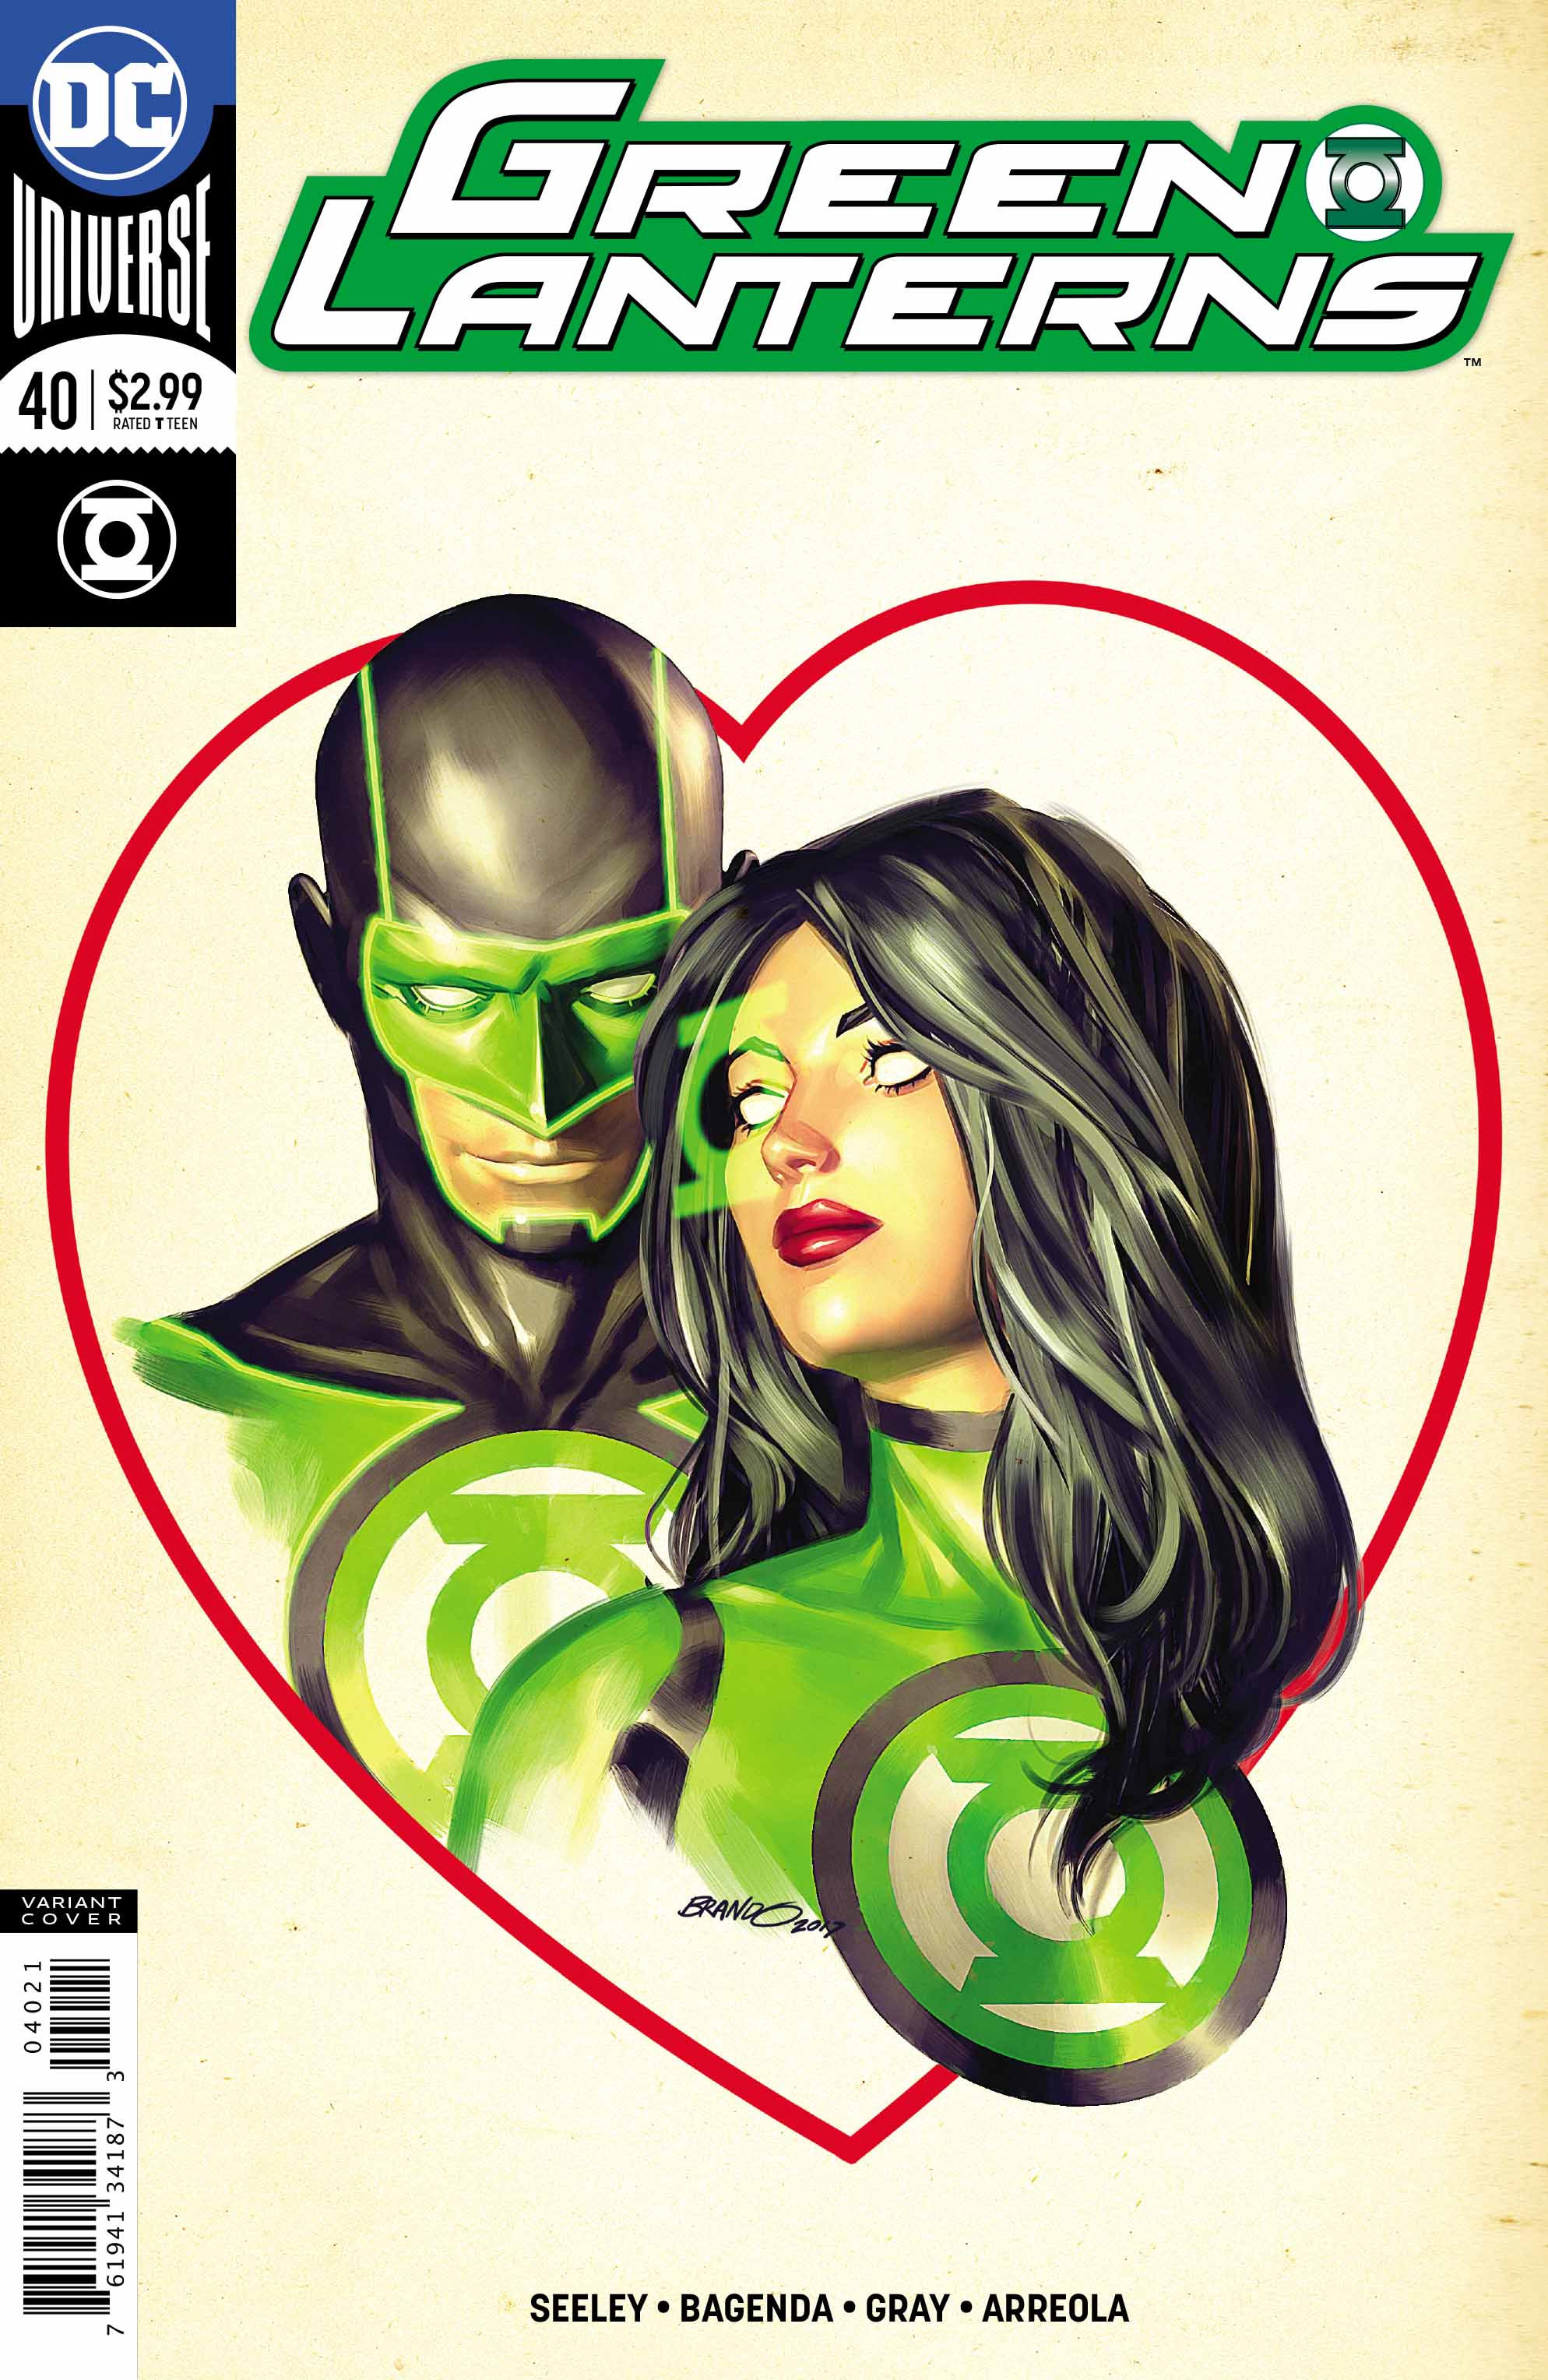 Green Lanterns #40 Review